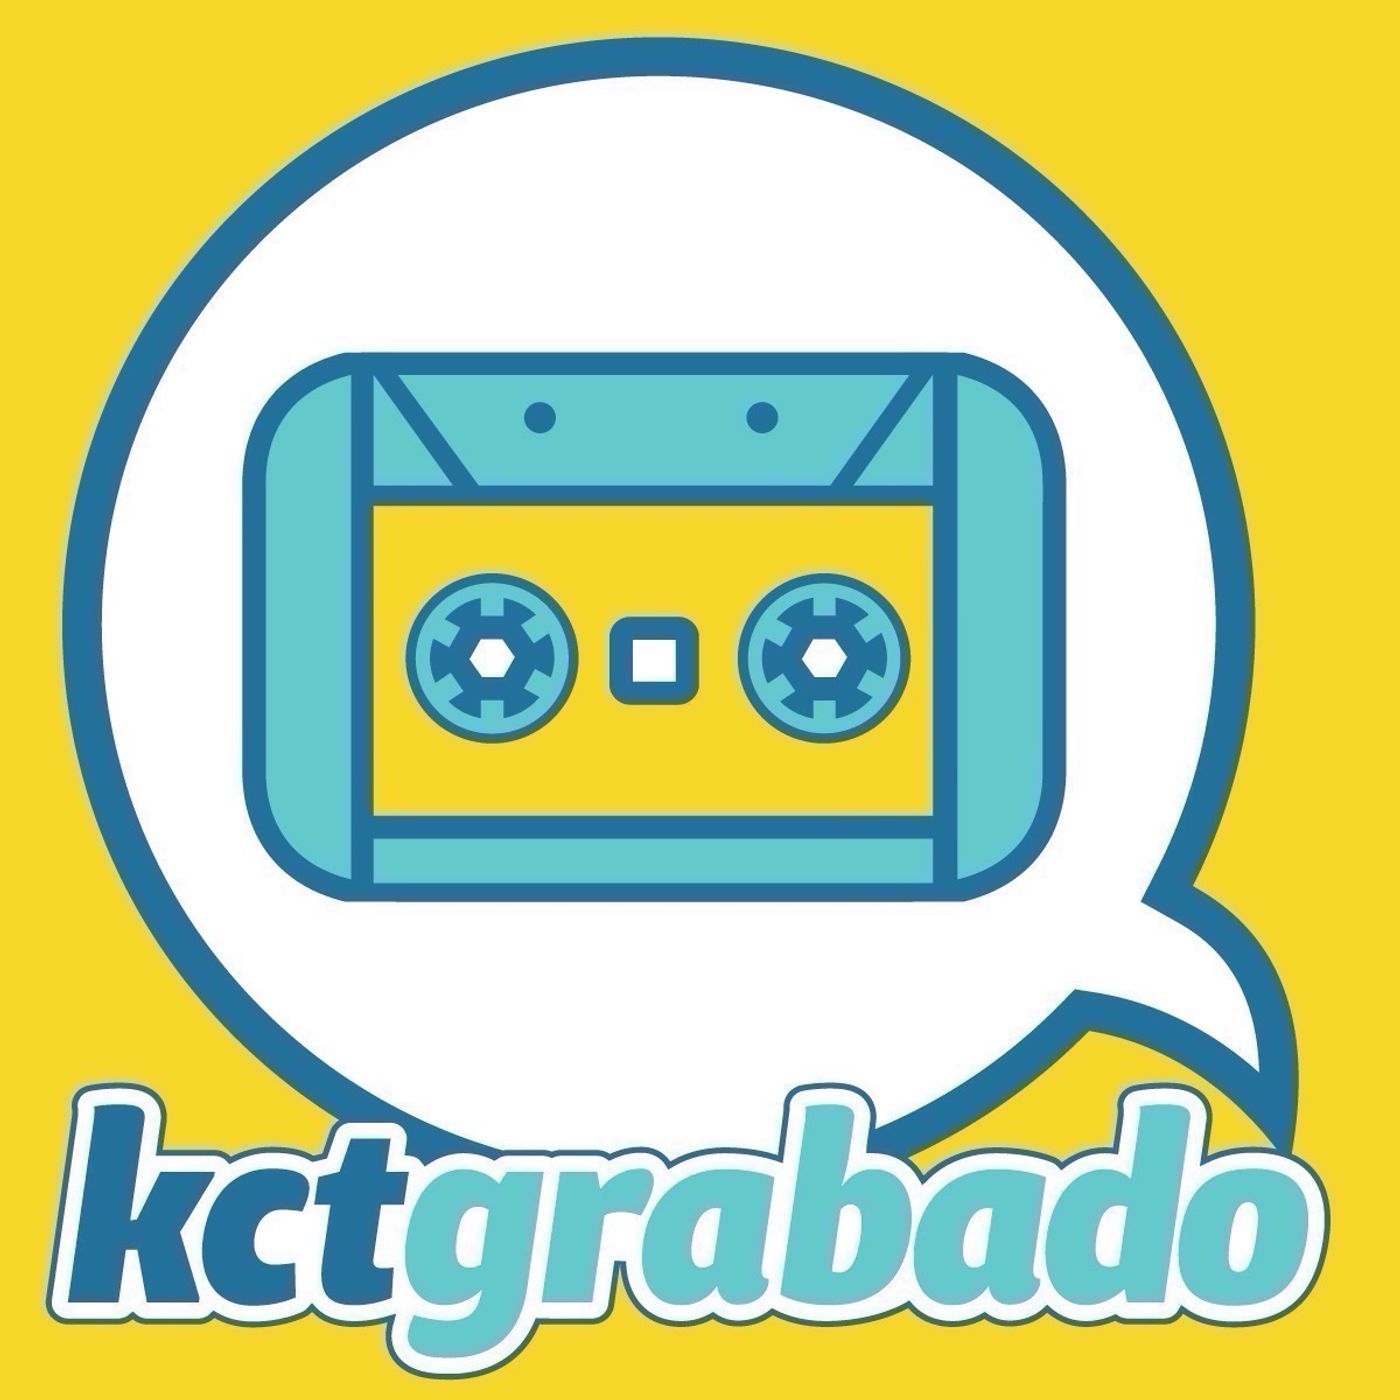 KCT grabado: Festival SOUND+ México (Entrevista con Moisés Sacal Hadid)